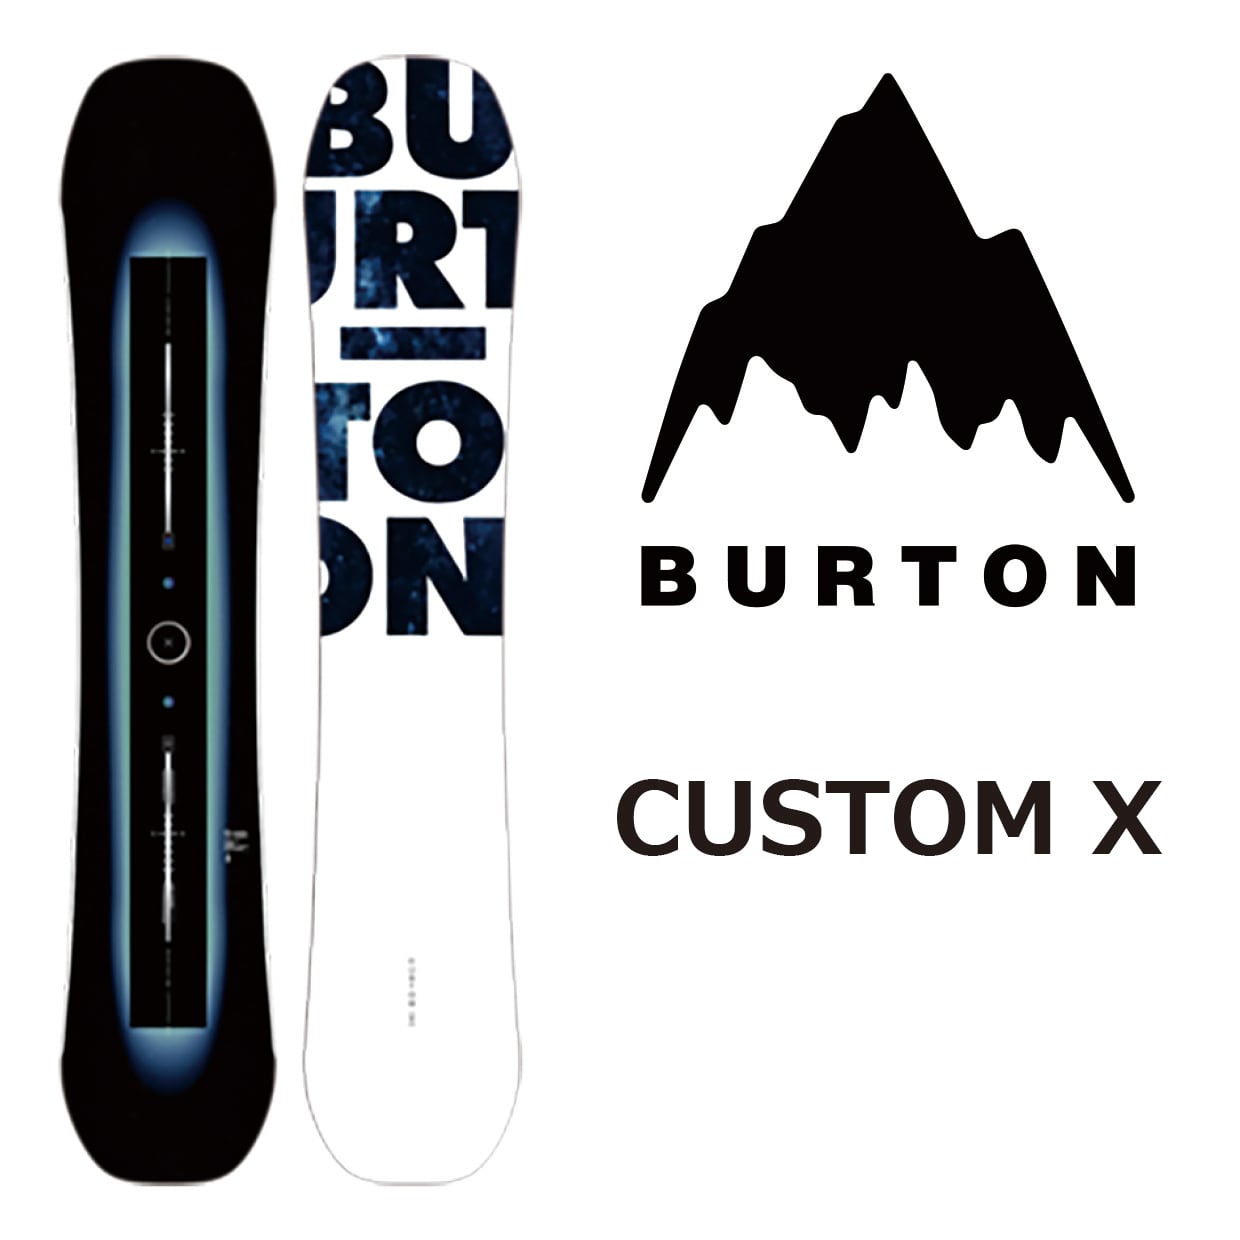 ◆ スノーボード BURTON CUSTOM X 156 cm カスタム スノボ